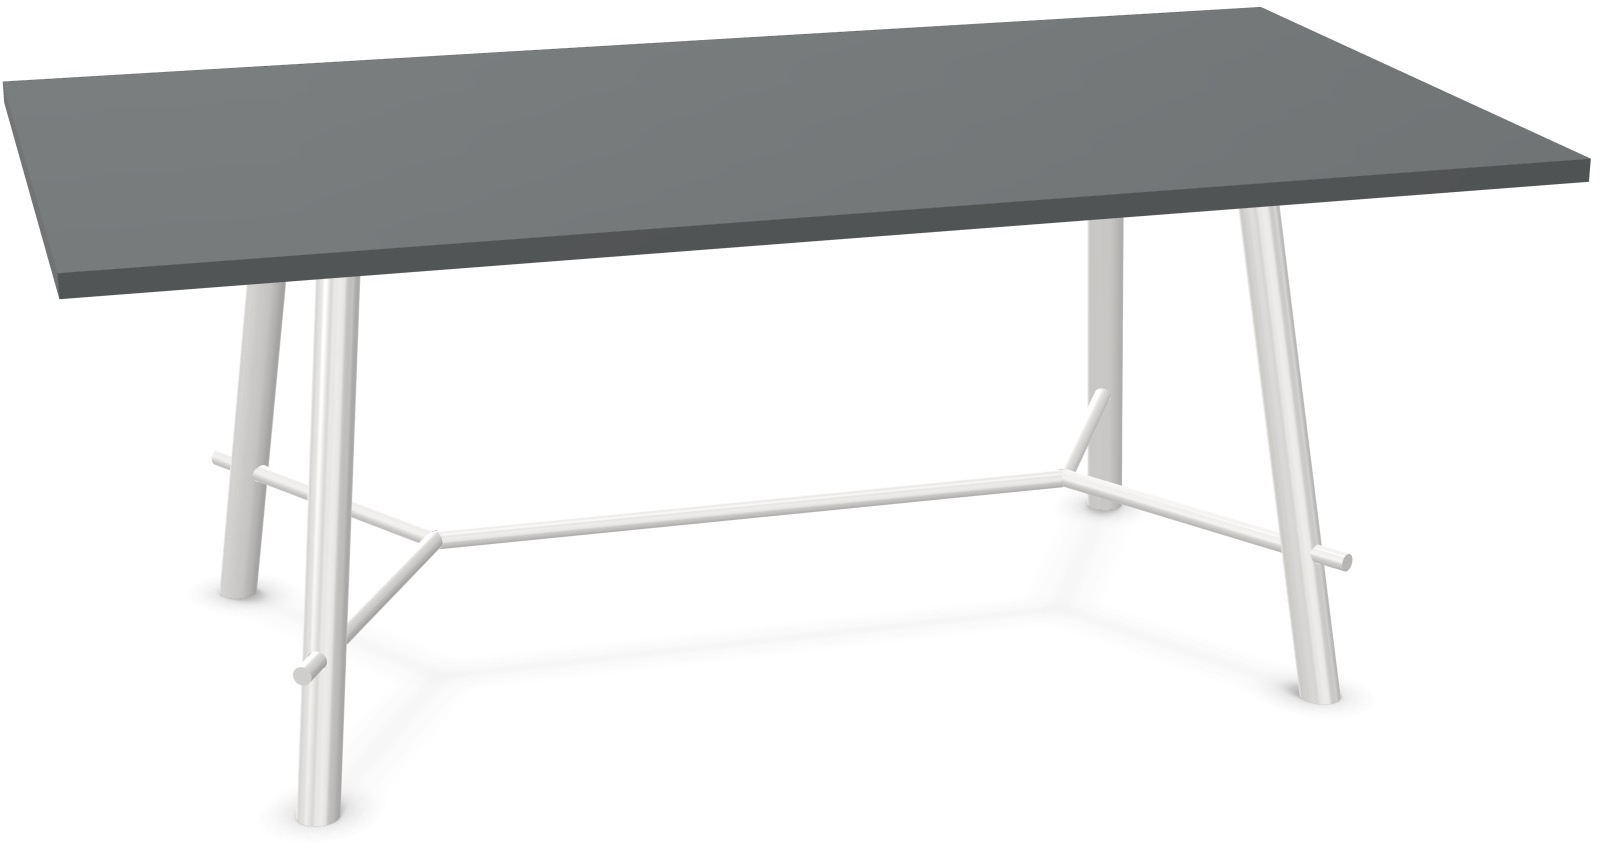 Record Living Maxi Tisch in Anthrazit / Weiss präsentiert im Onlineshop von KAQTU Design AG. Esstisch ist von Infiniti Design